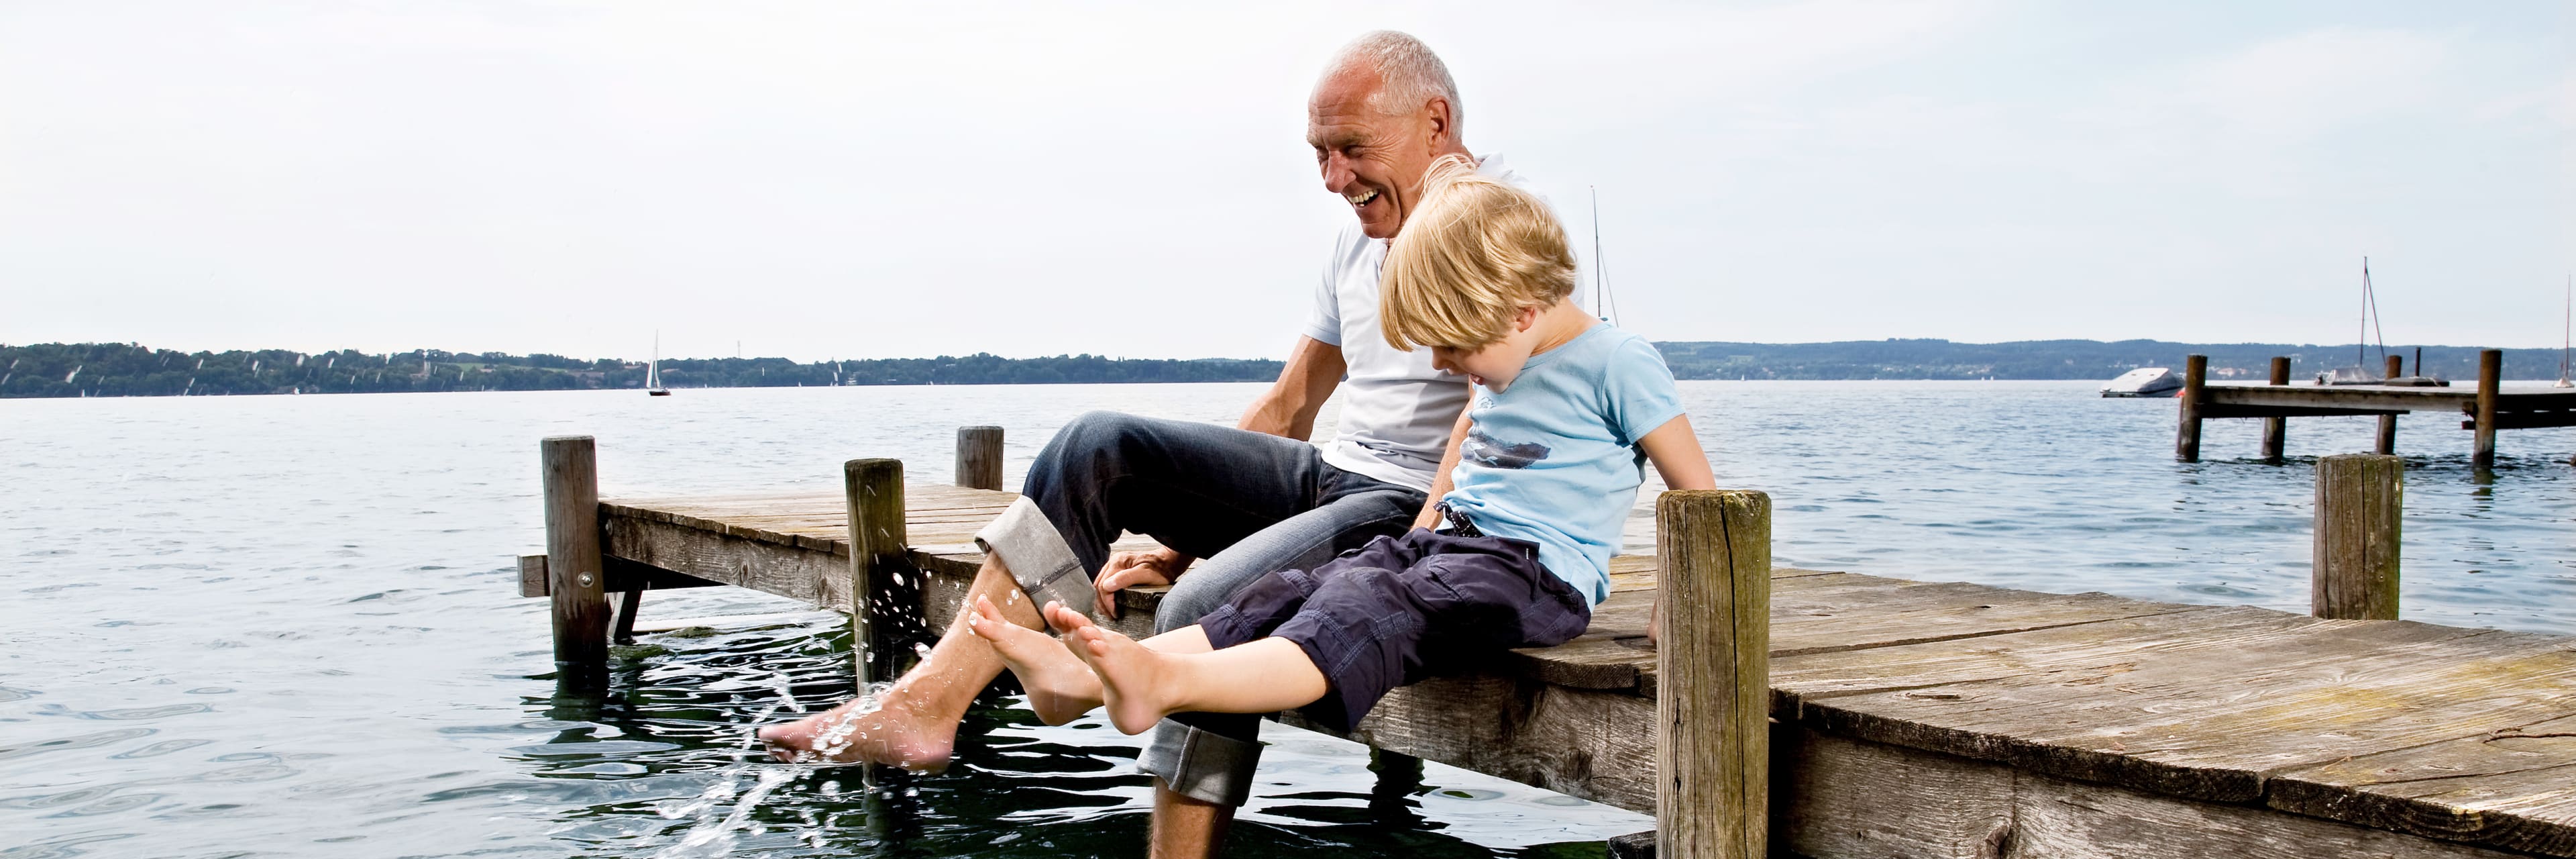 boy splashing with grandfather on dock at lake